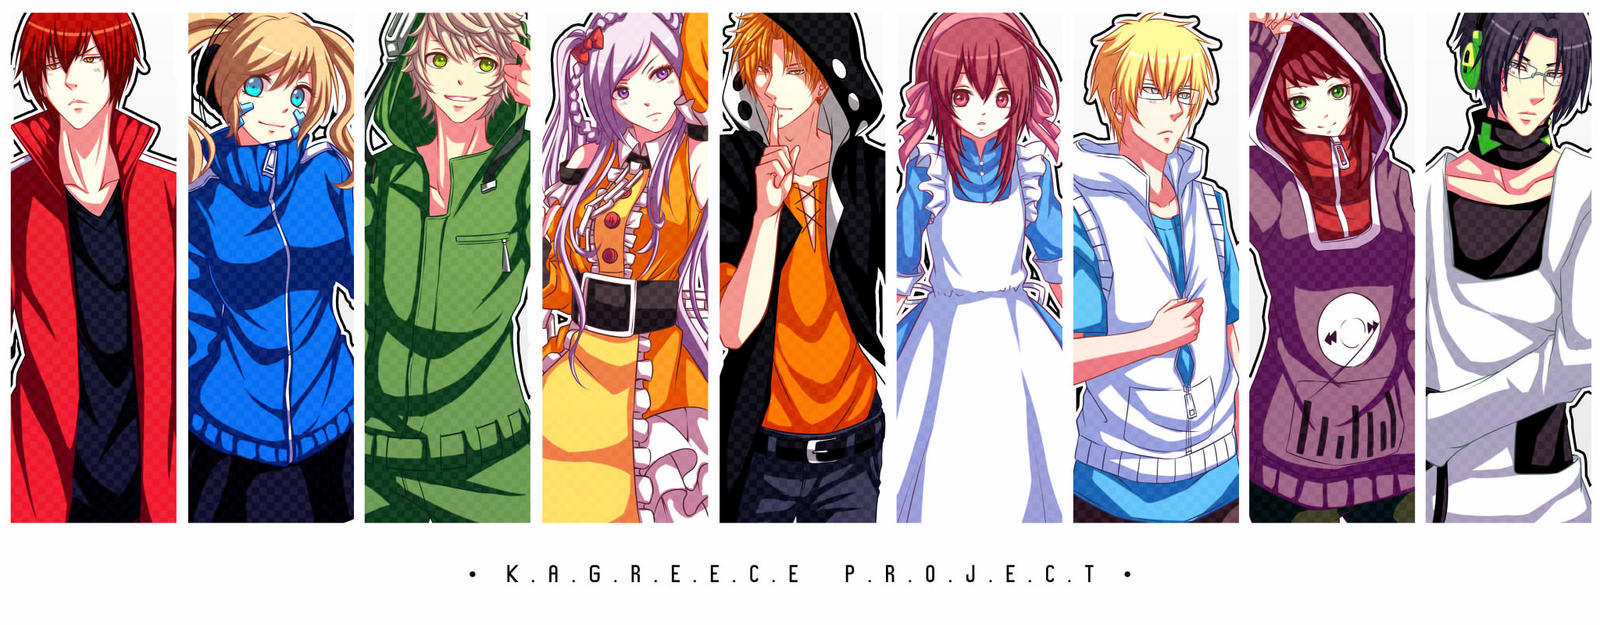 HMLS : Kagreece Project